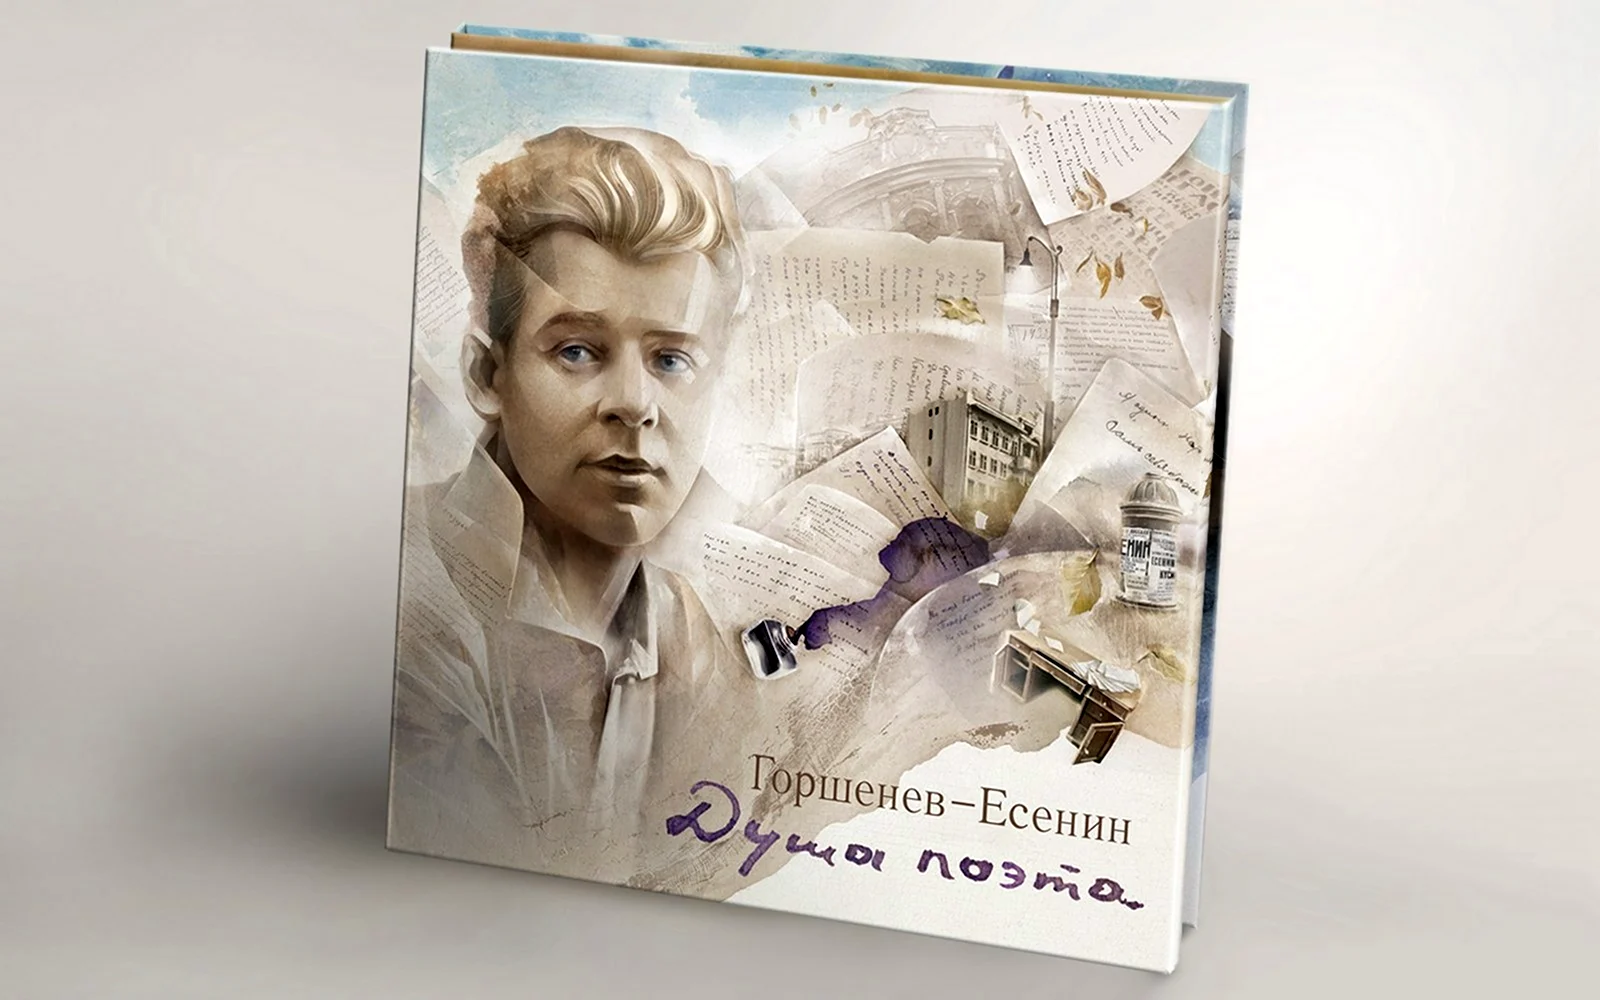 2012 - Горшенев-Есенин - душа поэта